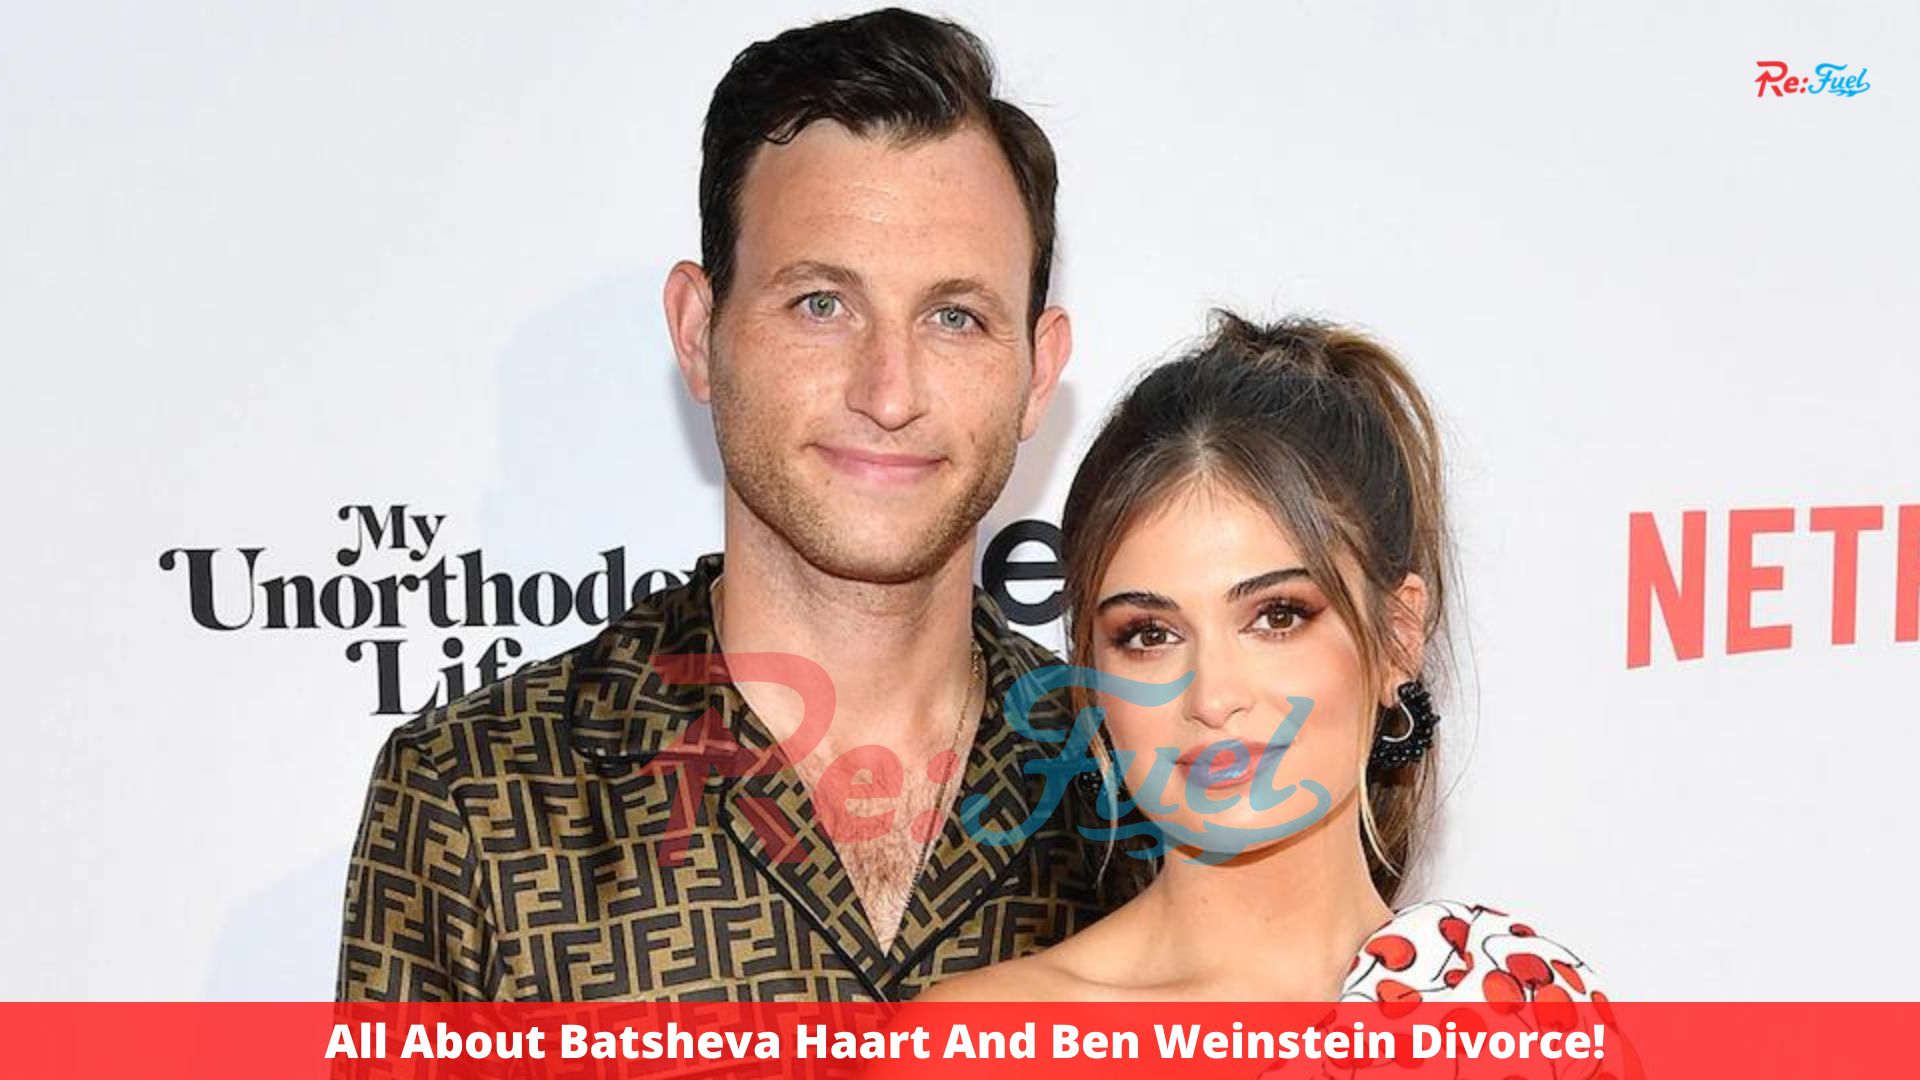 All About Batsheva Haart And Ben Weinstein Divorce!